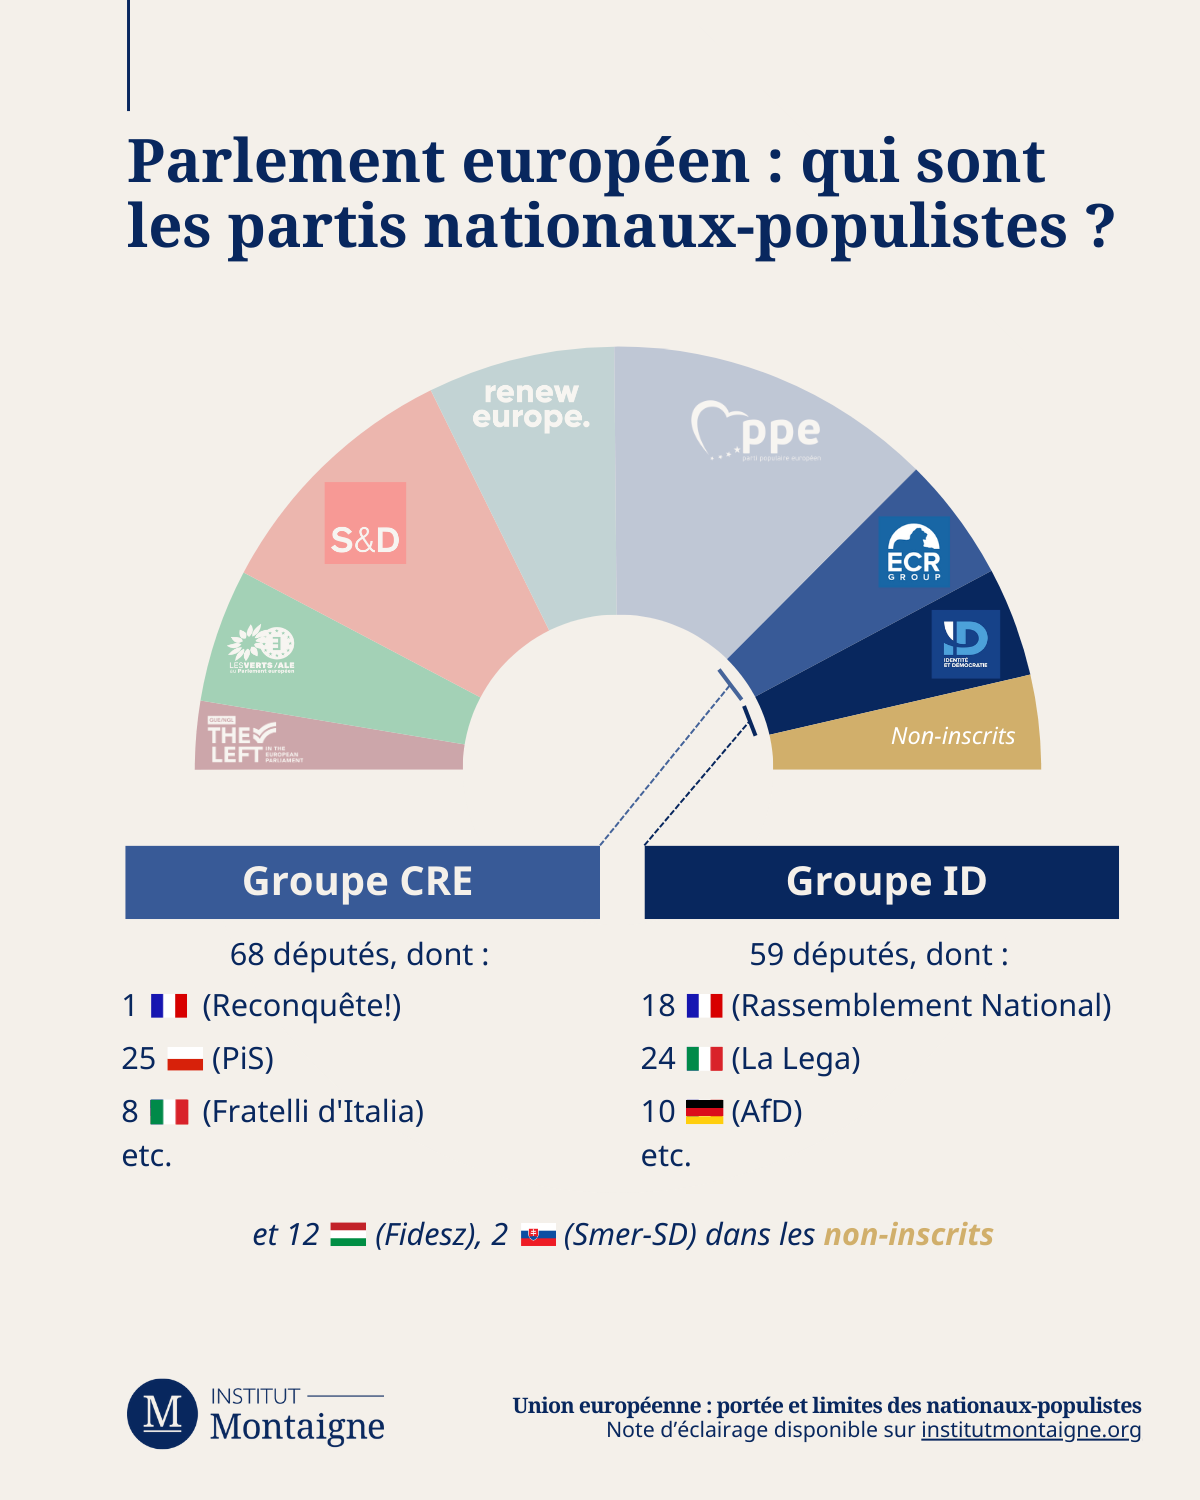 Parlement européen : qui sont les partis nationaux-populistes ?